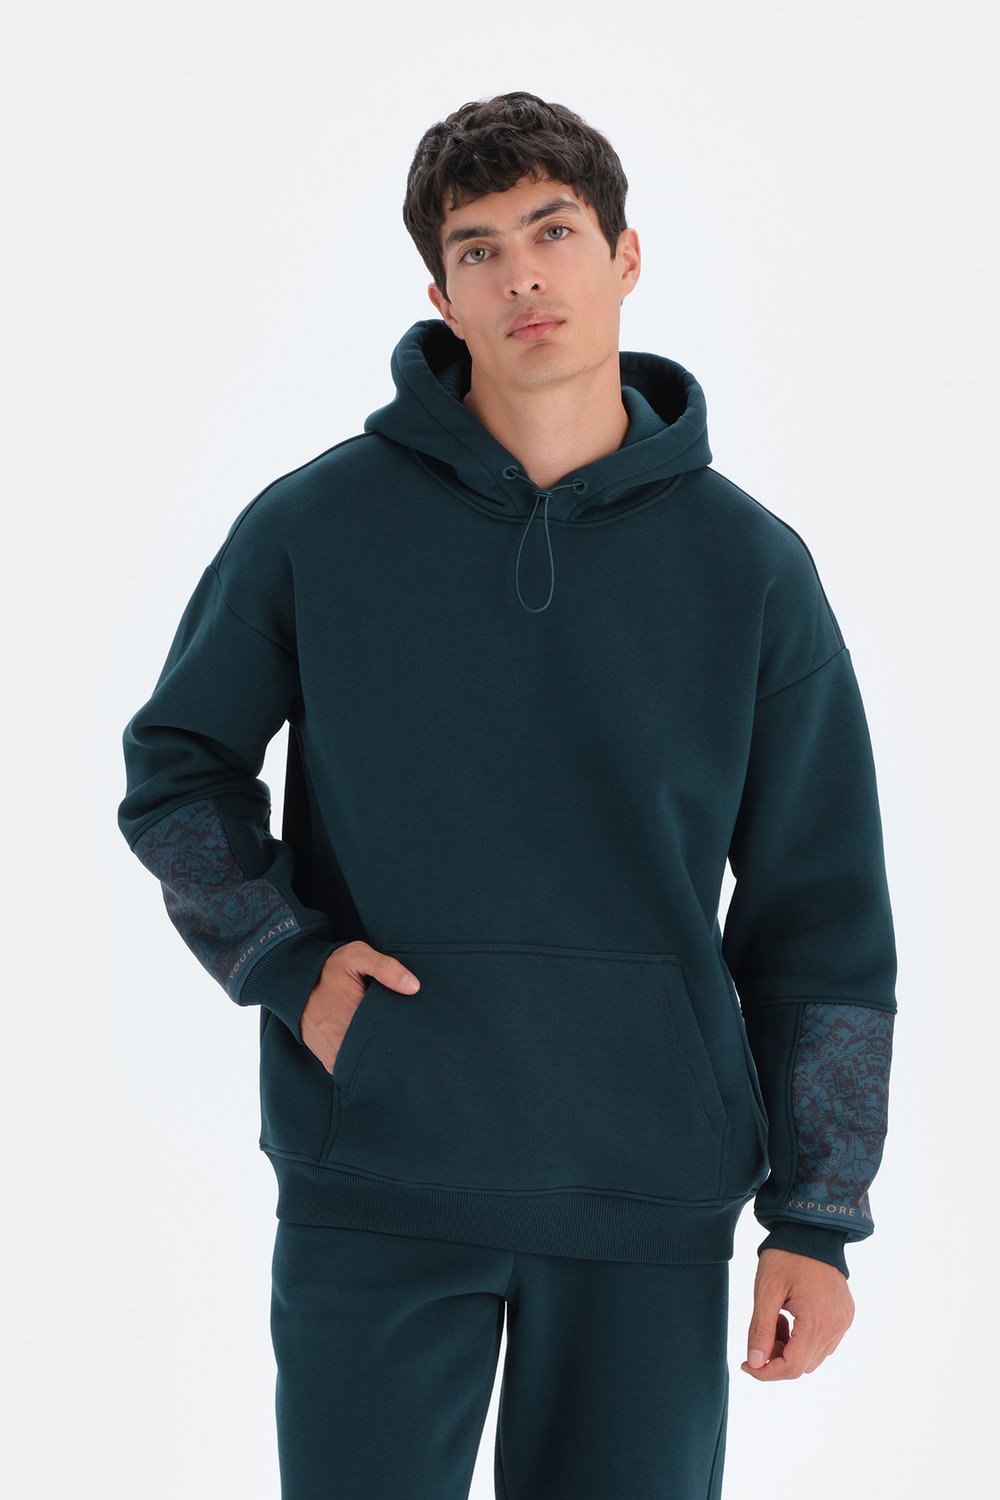 Dagi Dark Green Men's Hooded Sweatshirt with Sleeve Garnish